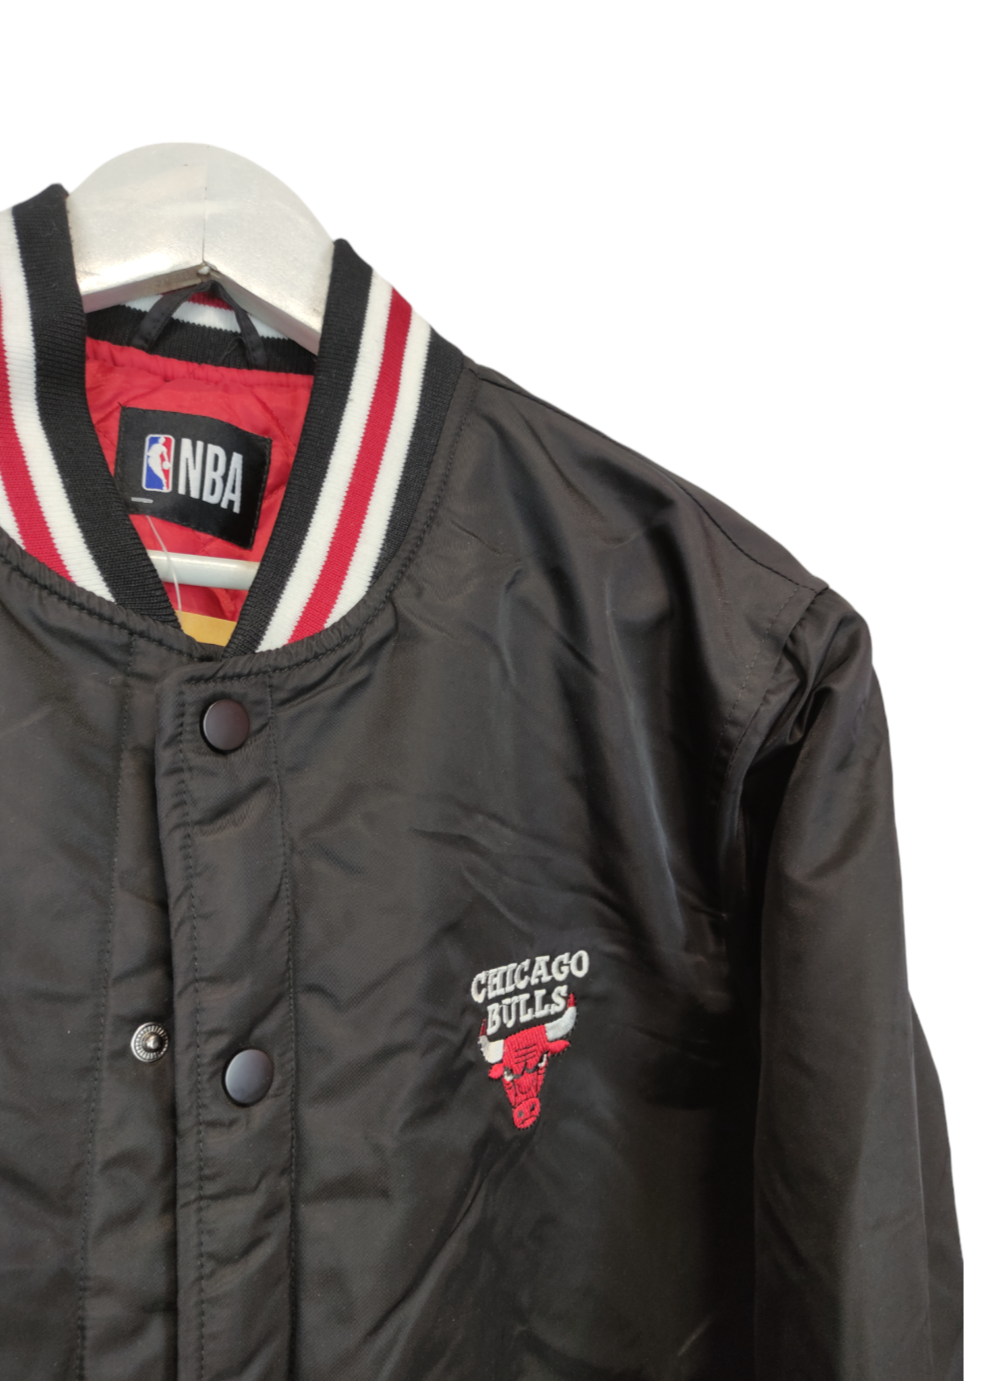 Σπορ Γυναικείο Μπουφάν/Sport Bomber Jacket - NBA CHICAGO BULLS σε Μαύρο χρώμα (Small)